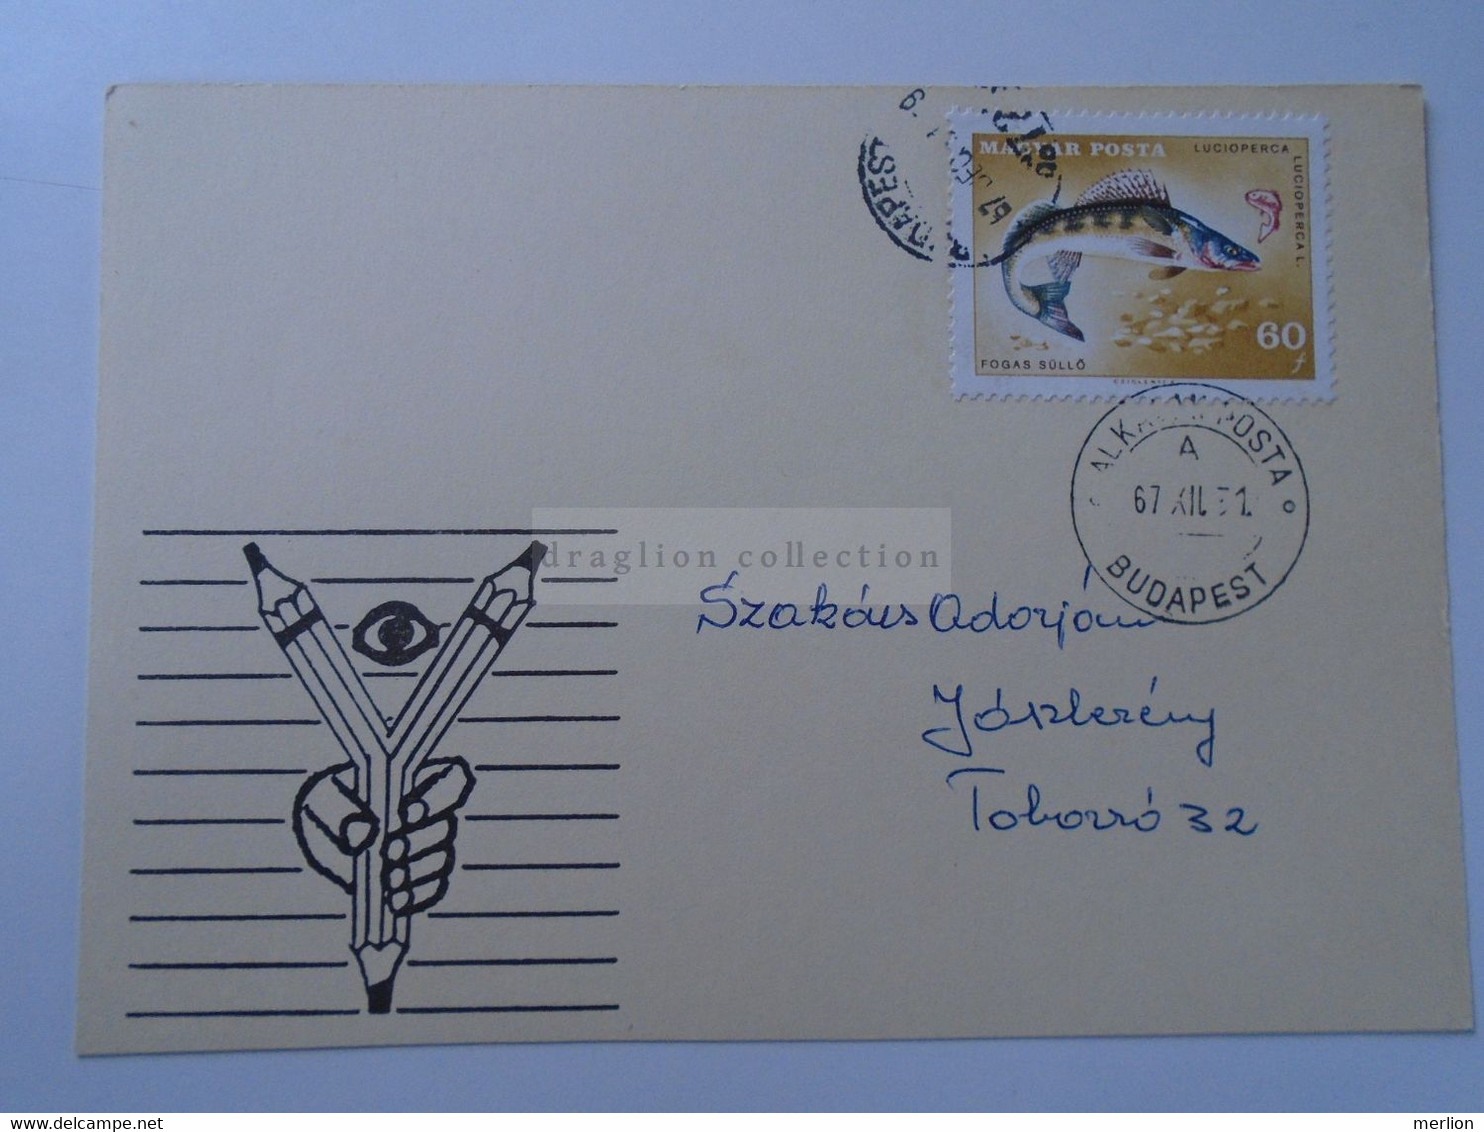 D187070    HUNGARY  Postmark     MAGYAR POSTA   - Hungarian Post -Alkalmi Posta Budapest  1967 - Storia Postale